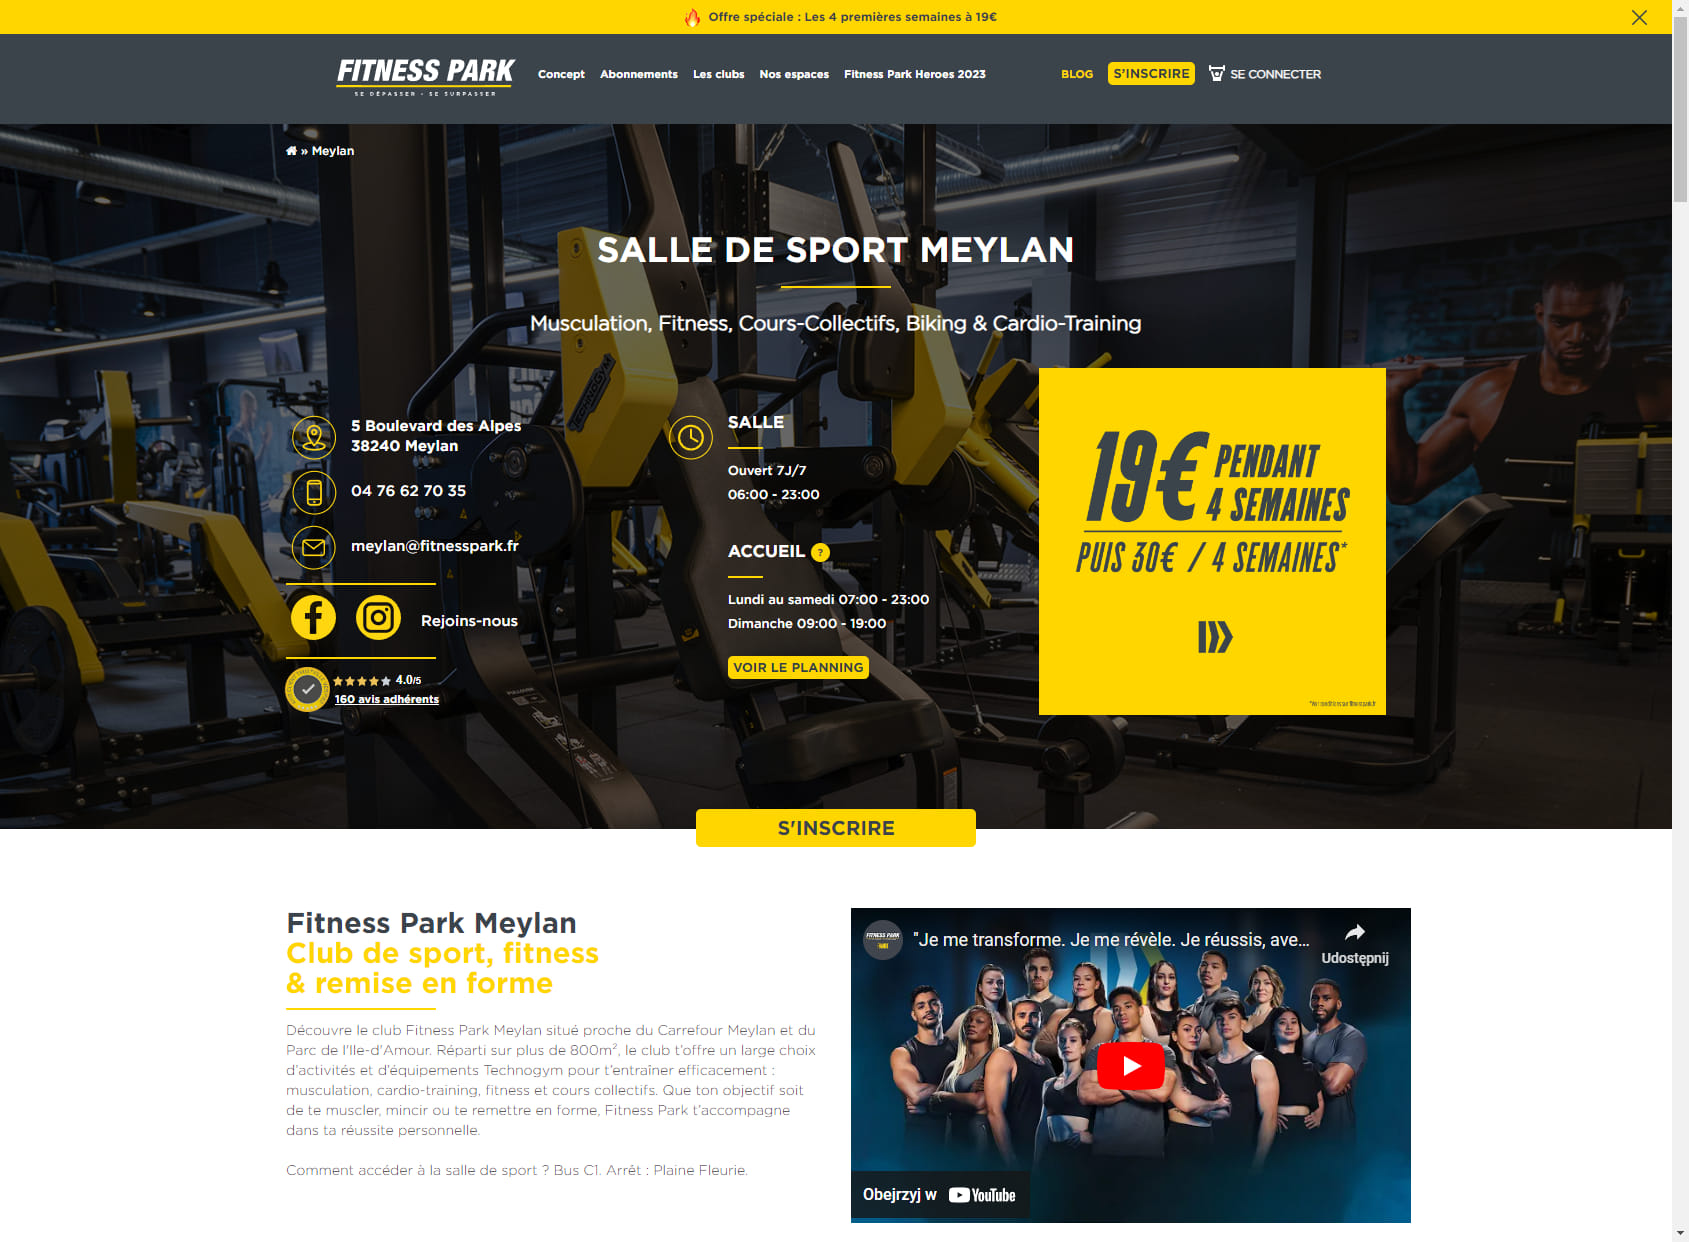 Salle de sport Meylan - Fitness Park